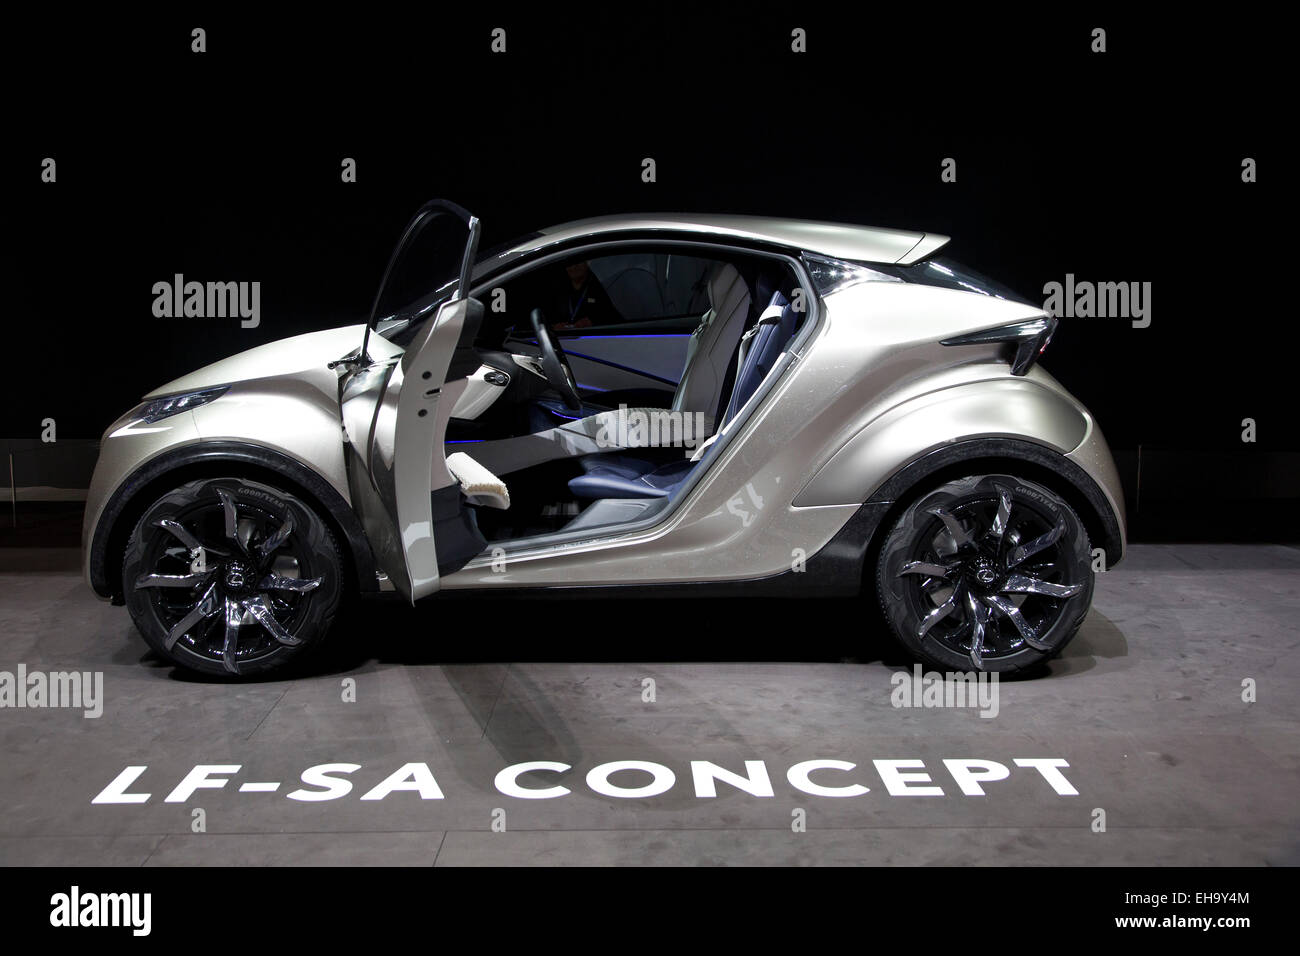 Lexus LF-SA concept at the Geneva motor show 2015 Stock Photo